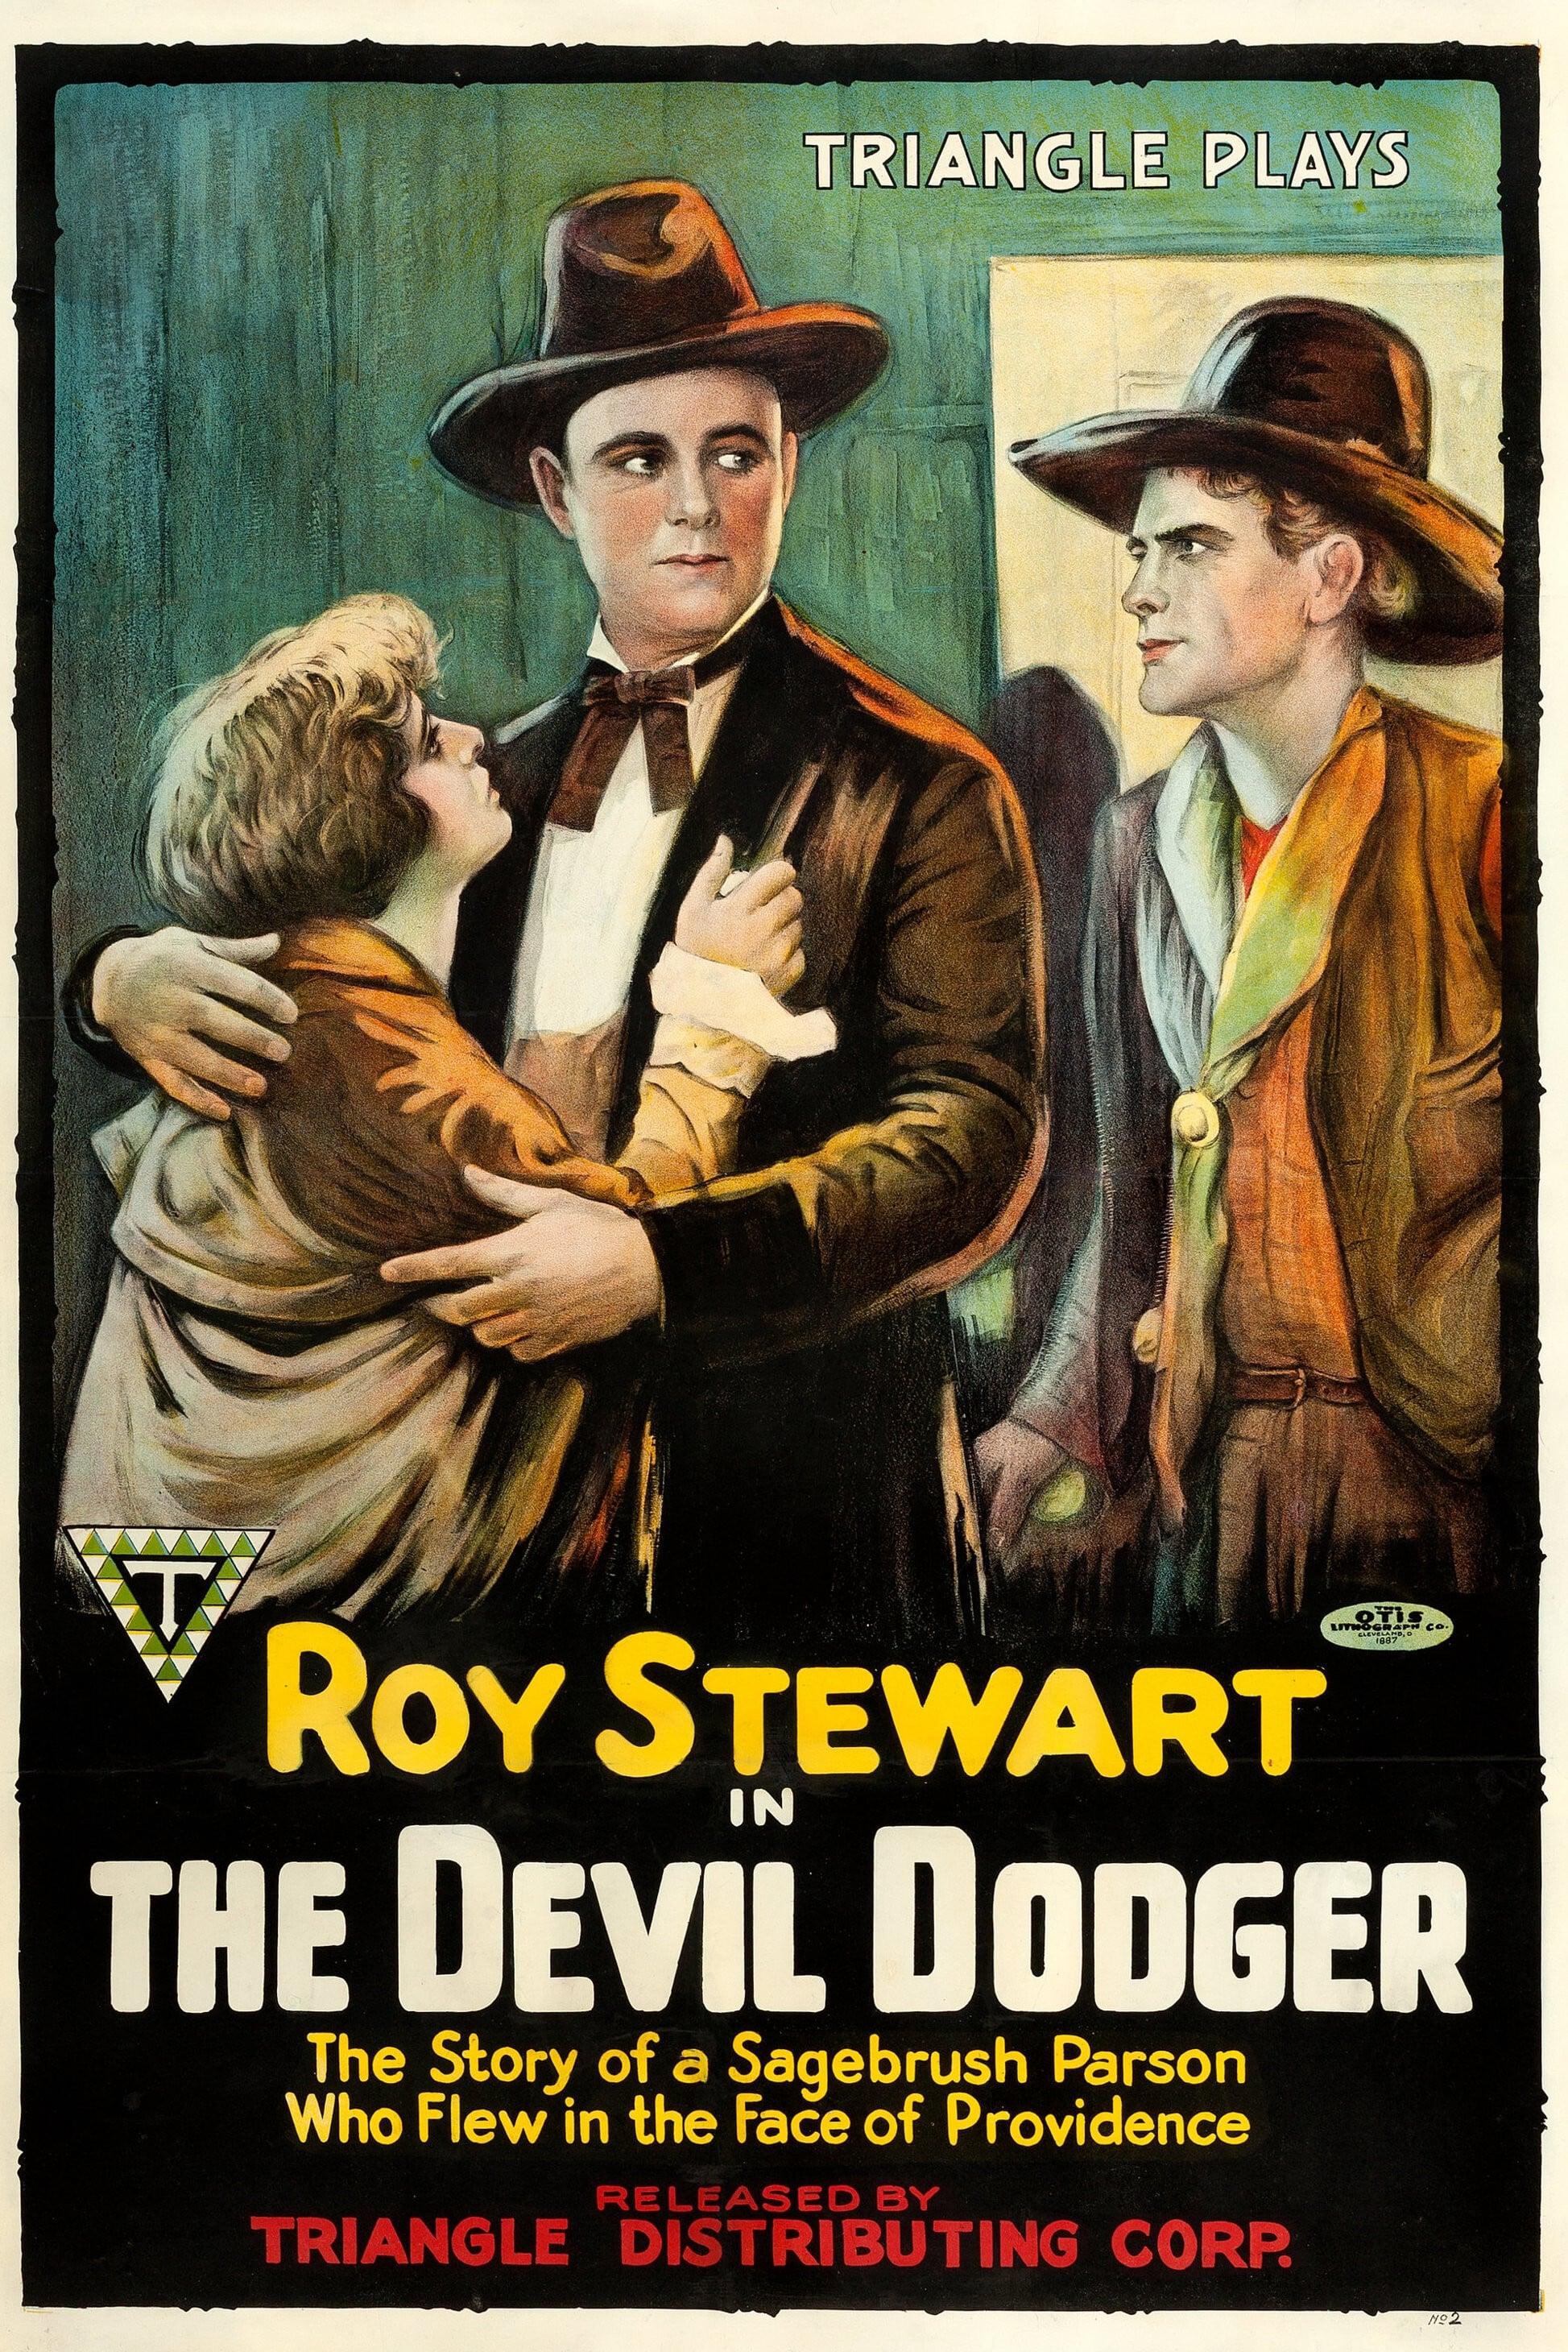 The Devil Dodger poster